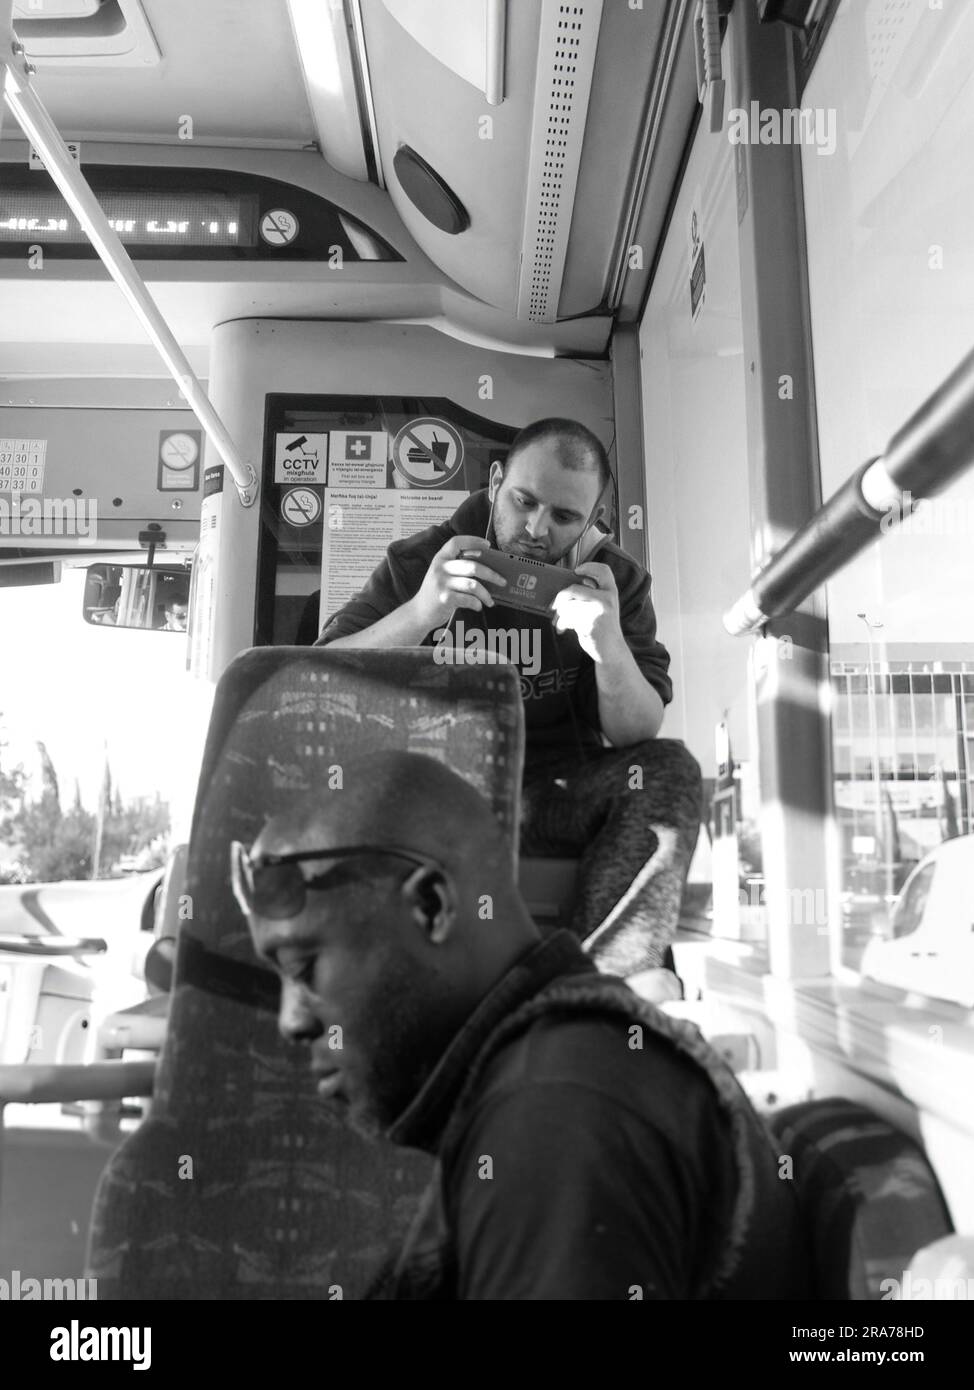 Giovane bianco e nero seduto su un autobus pubblico e giocando con i videogiochi, la Valletta, Malta Foto Stock